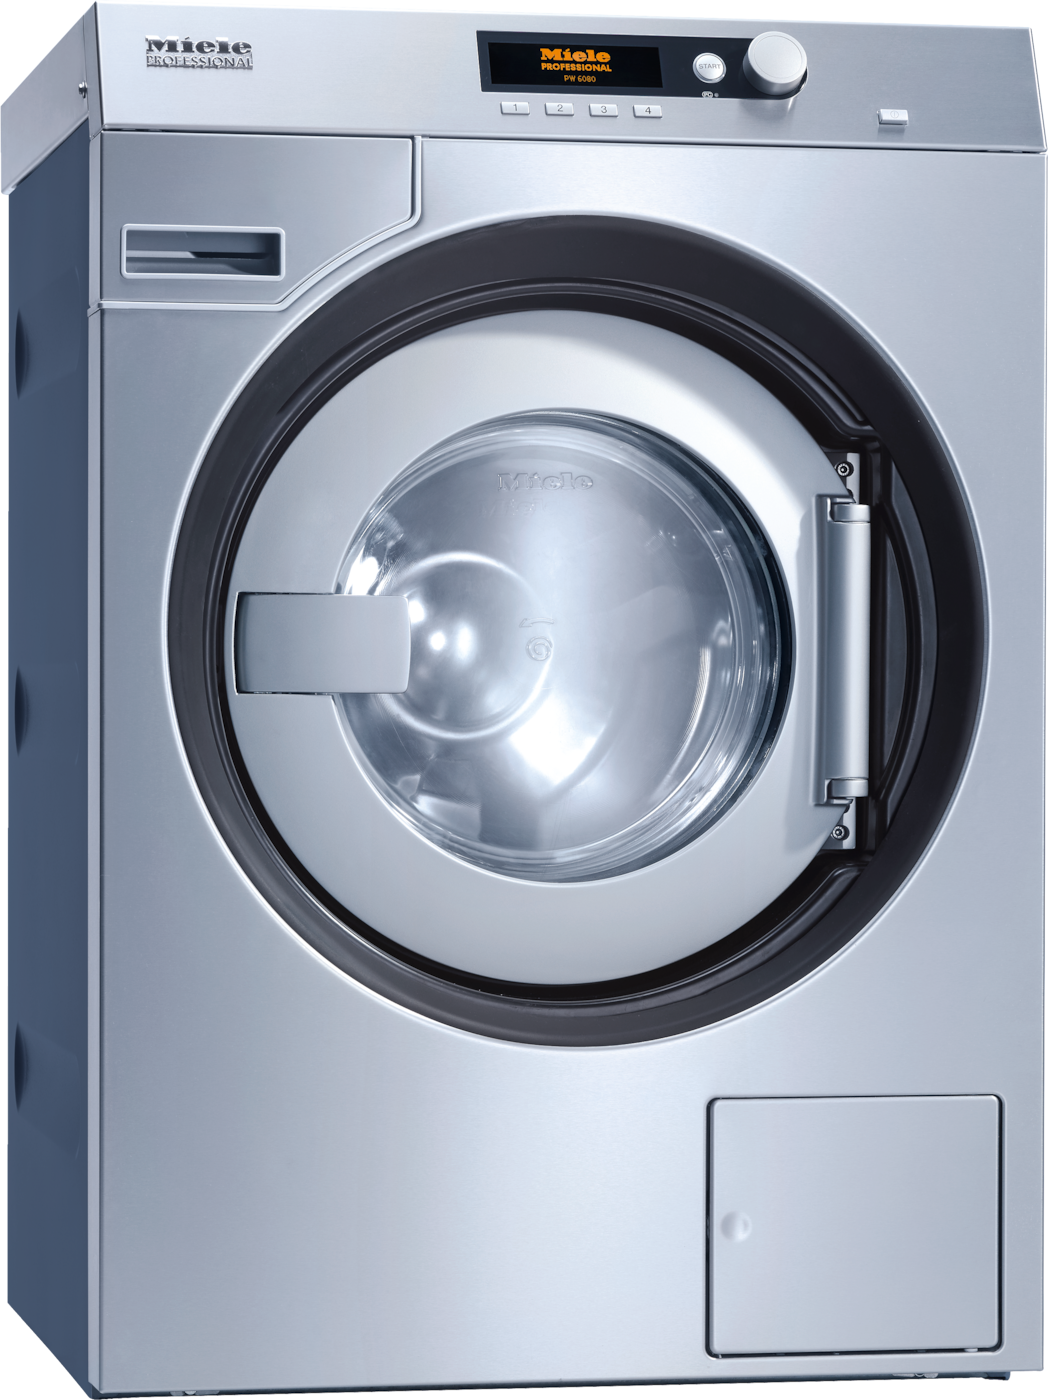 PW 6080 Vario XL [EL LP SOM 3 AC 440V 60Hz] - Washing machine, electrically heated 